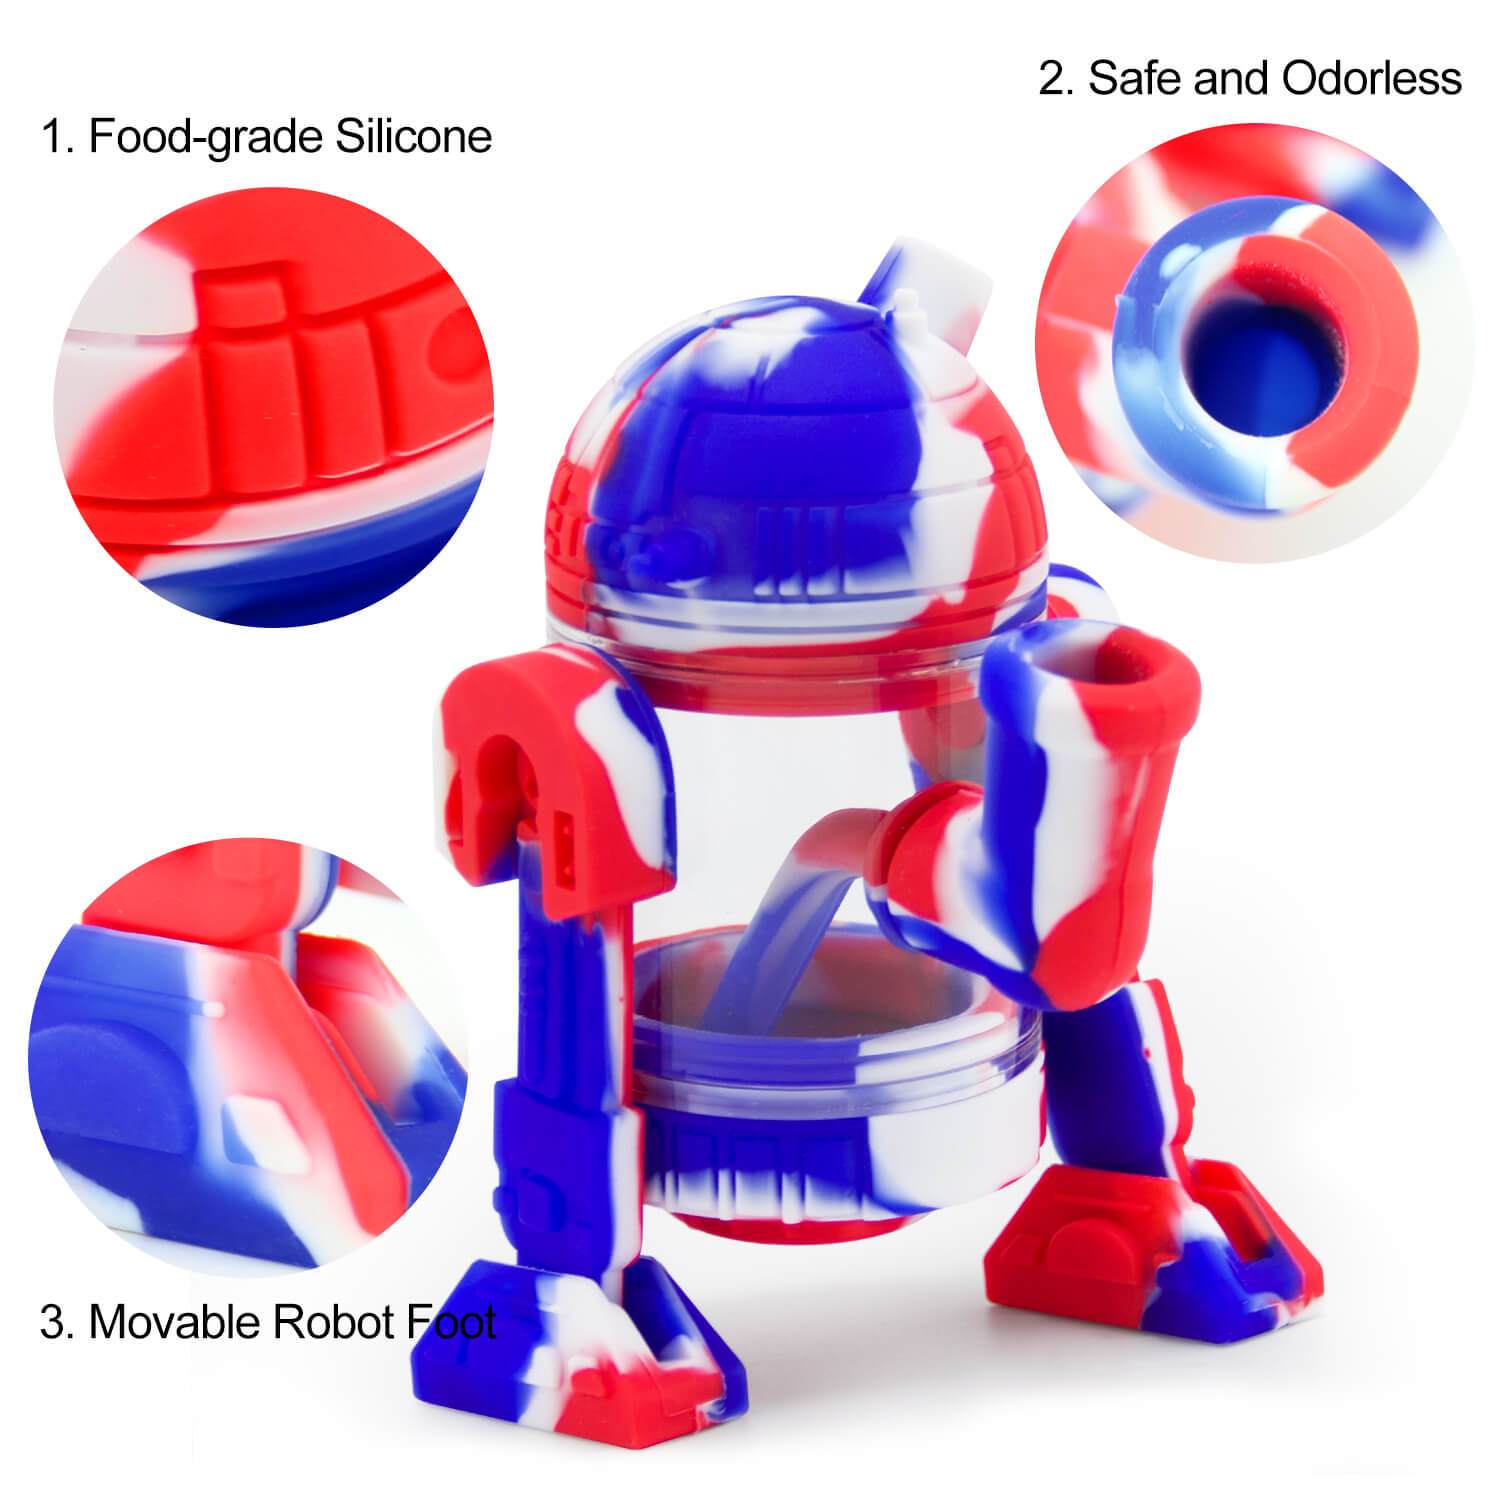 Silicone Bubbler Robot